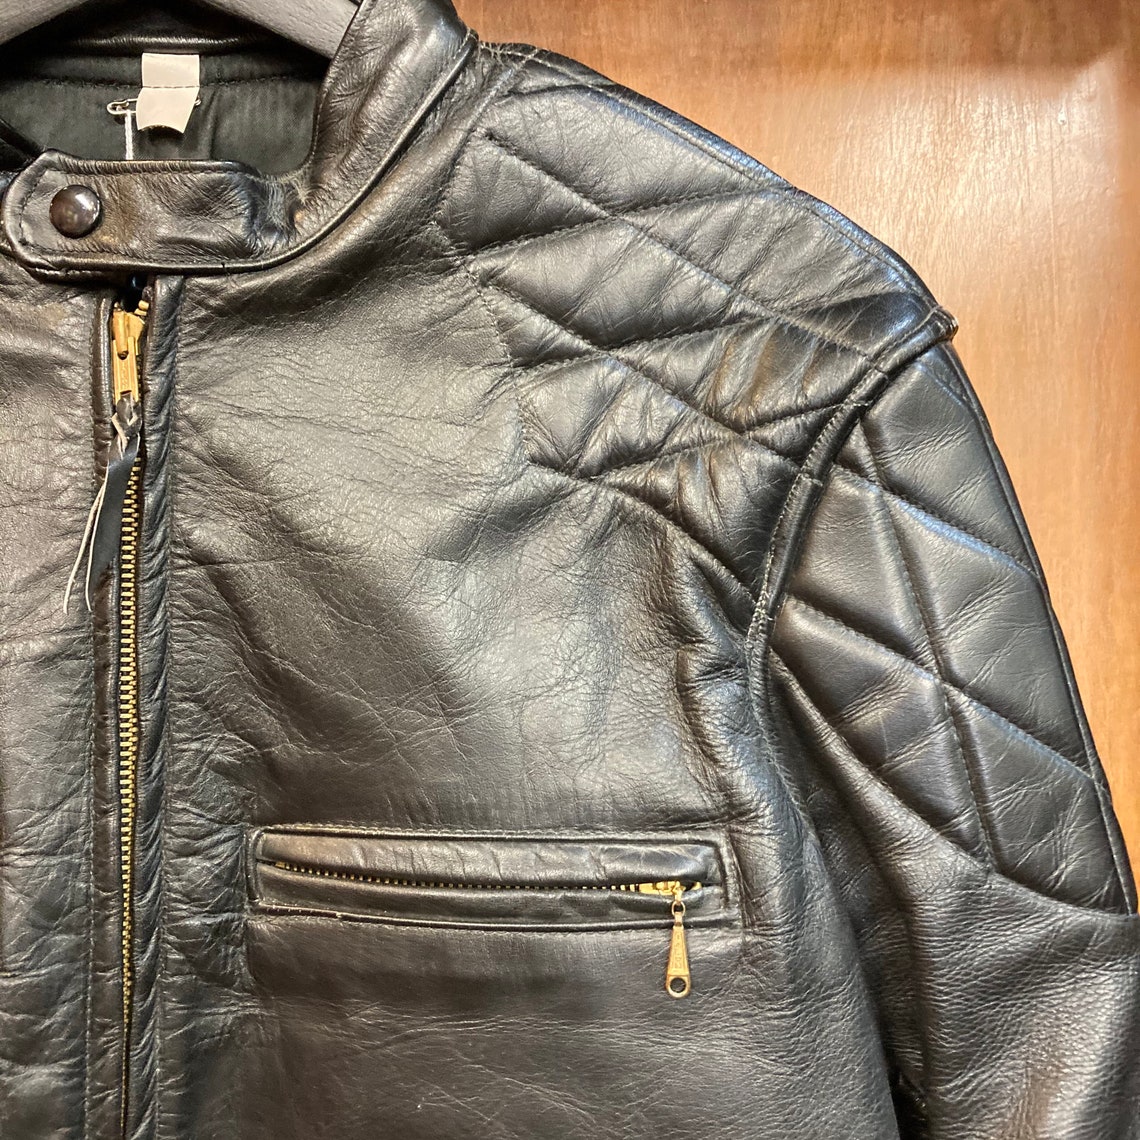 Vintage 1960s Cafe Racer Leather Jacket Great Details 60s - Etsy